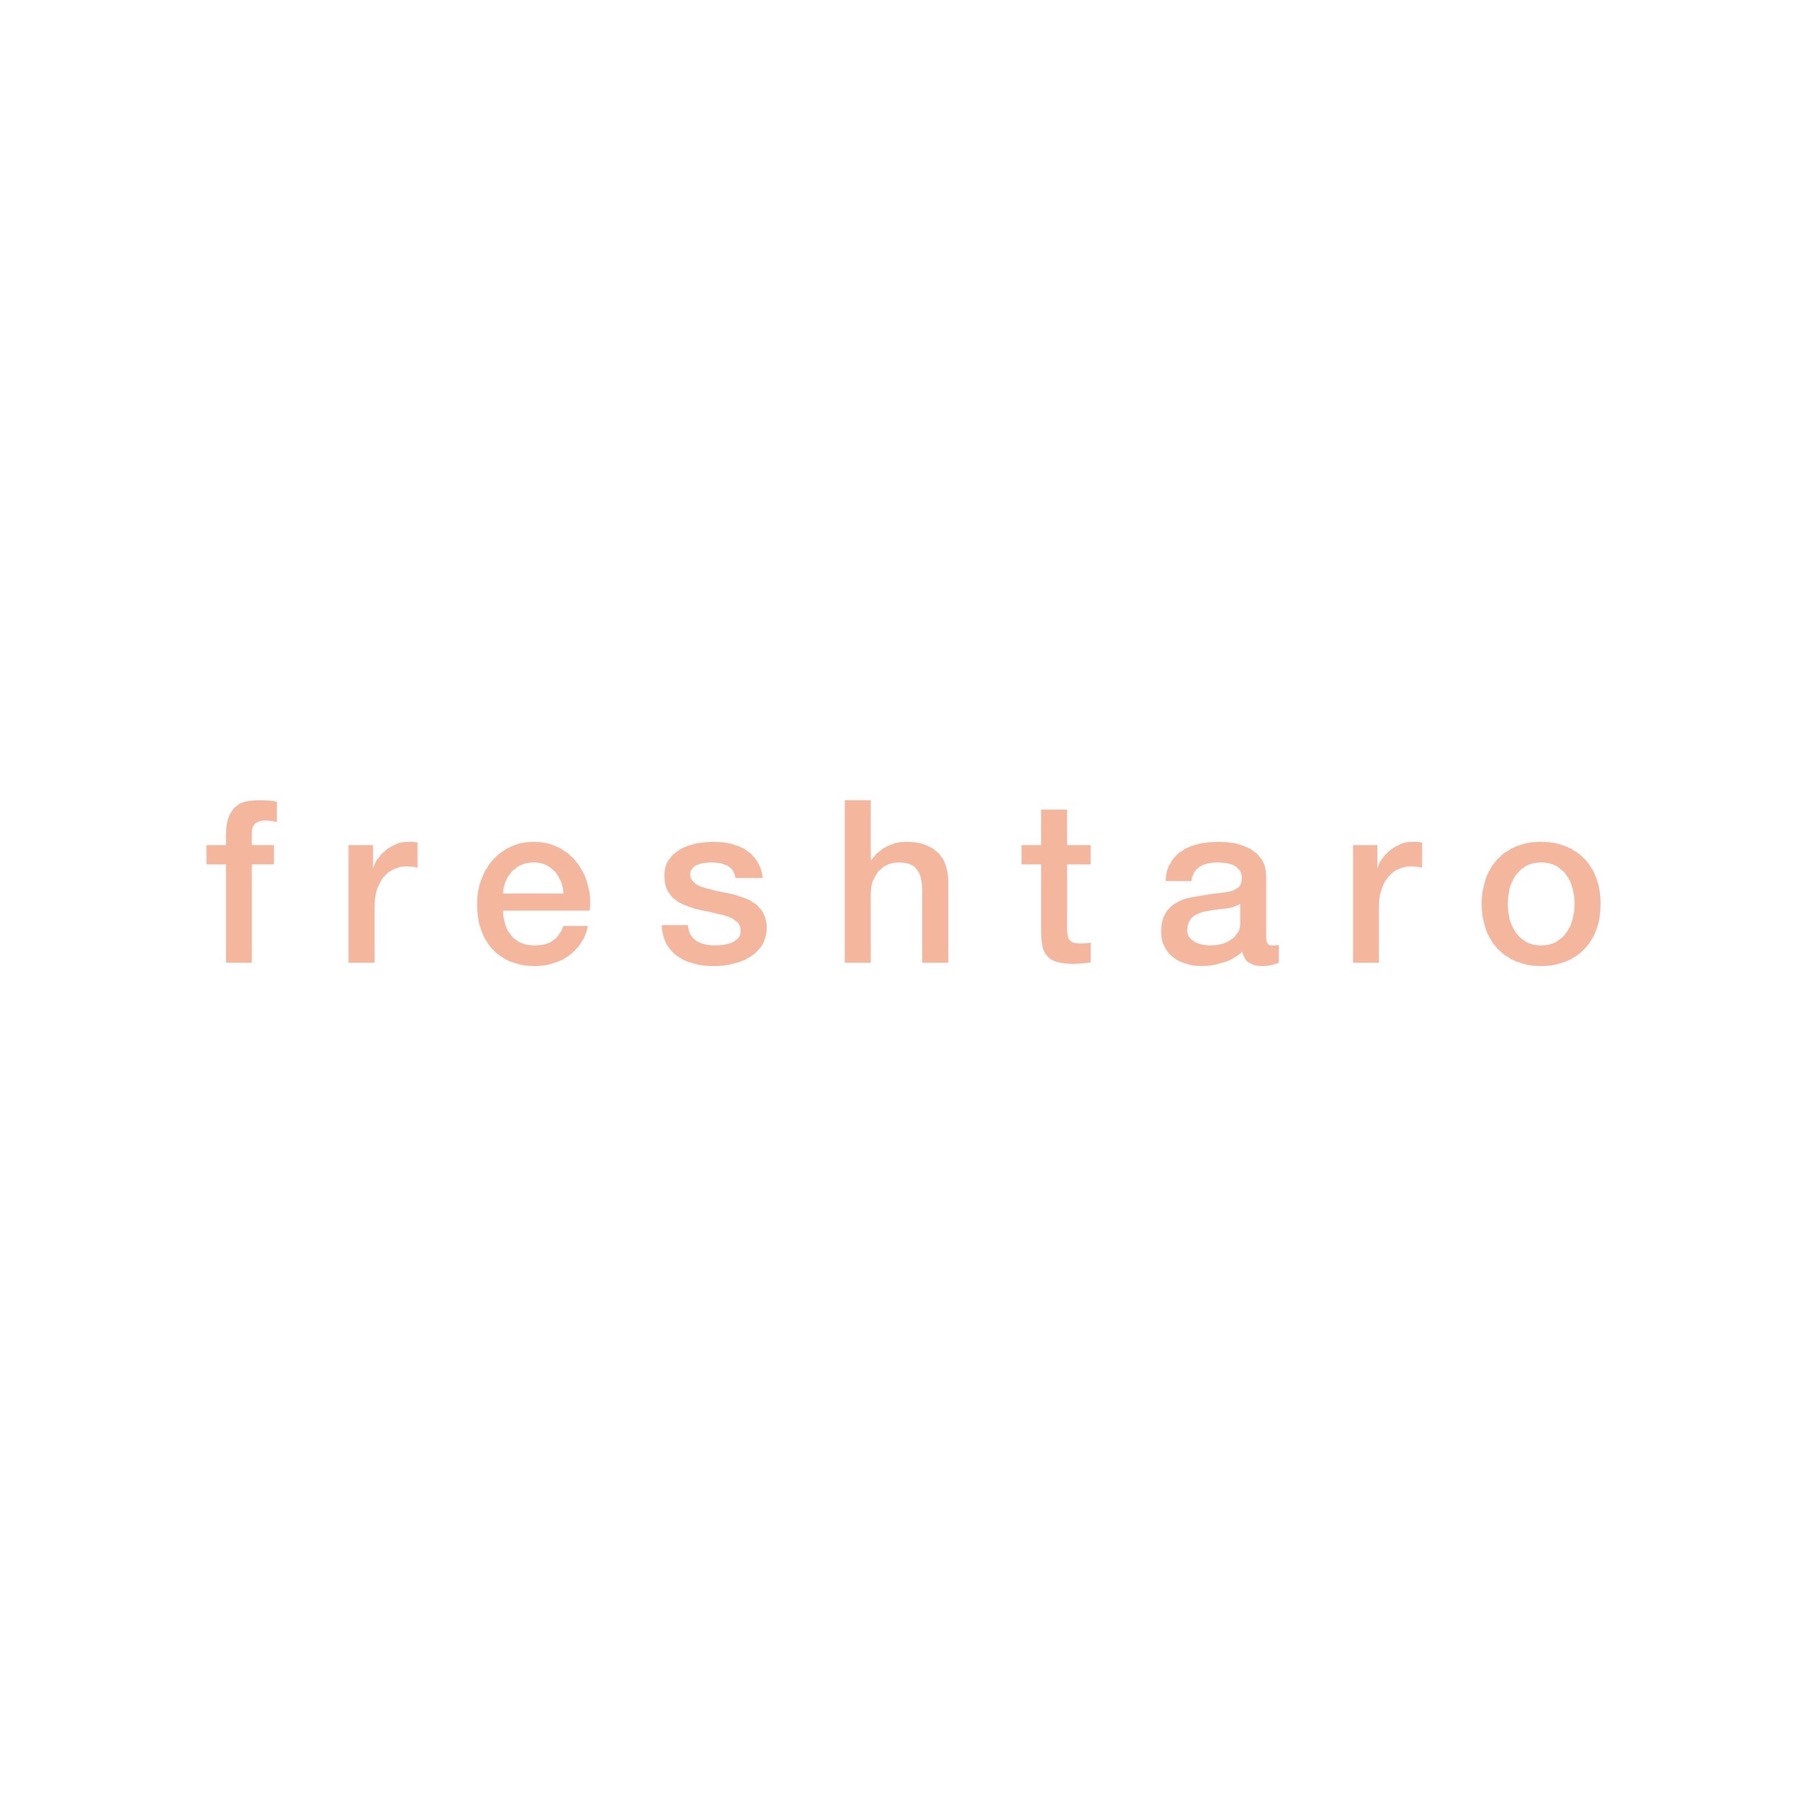 freshtaro